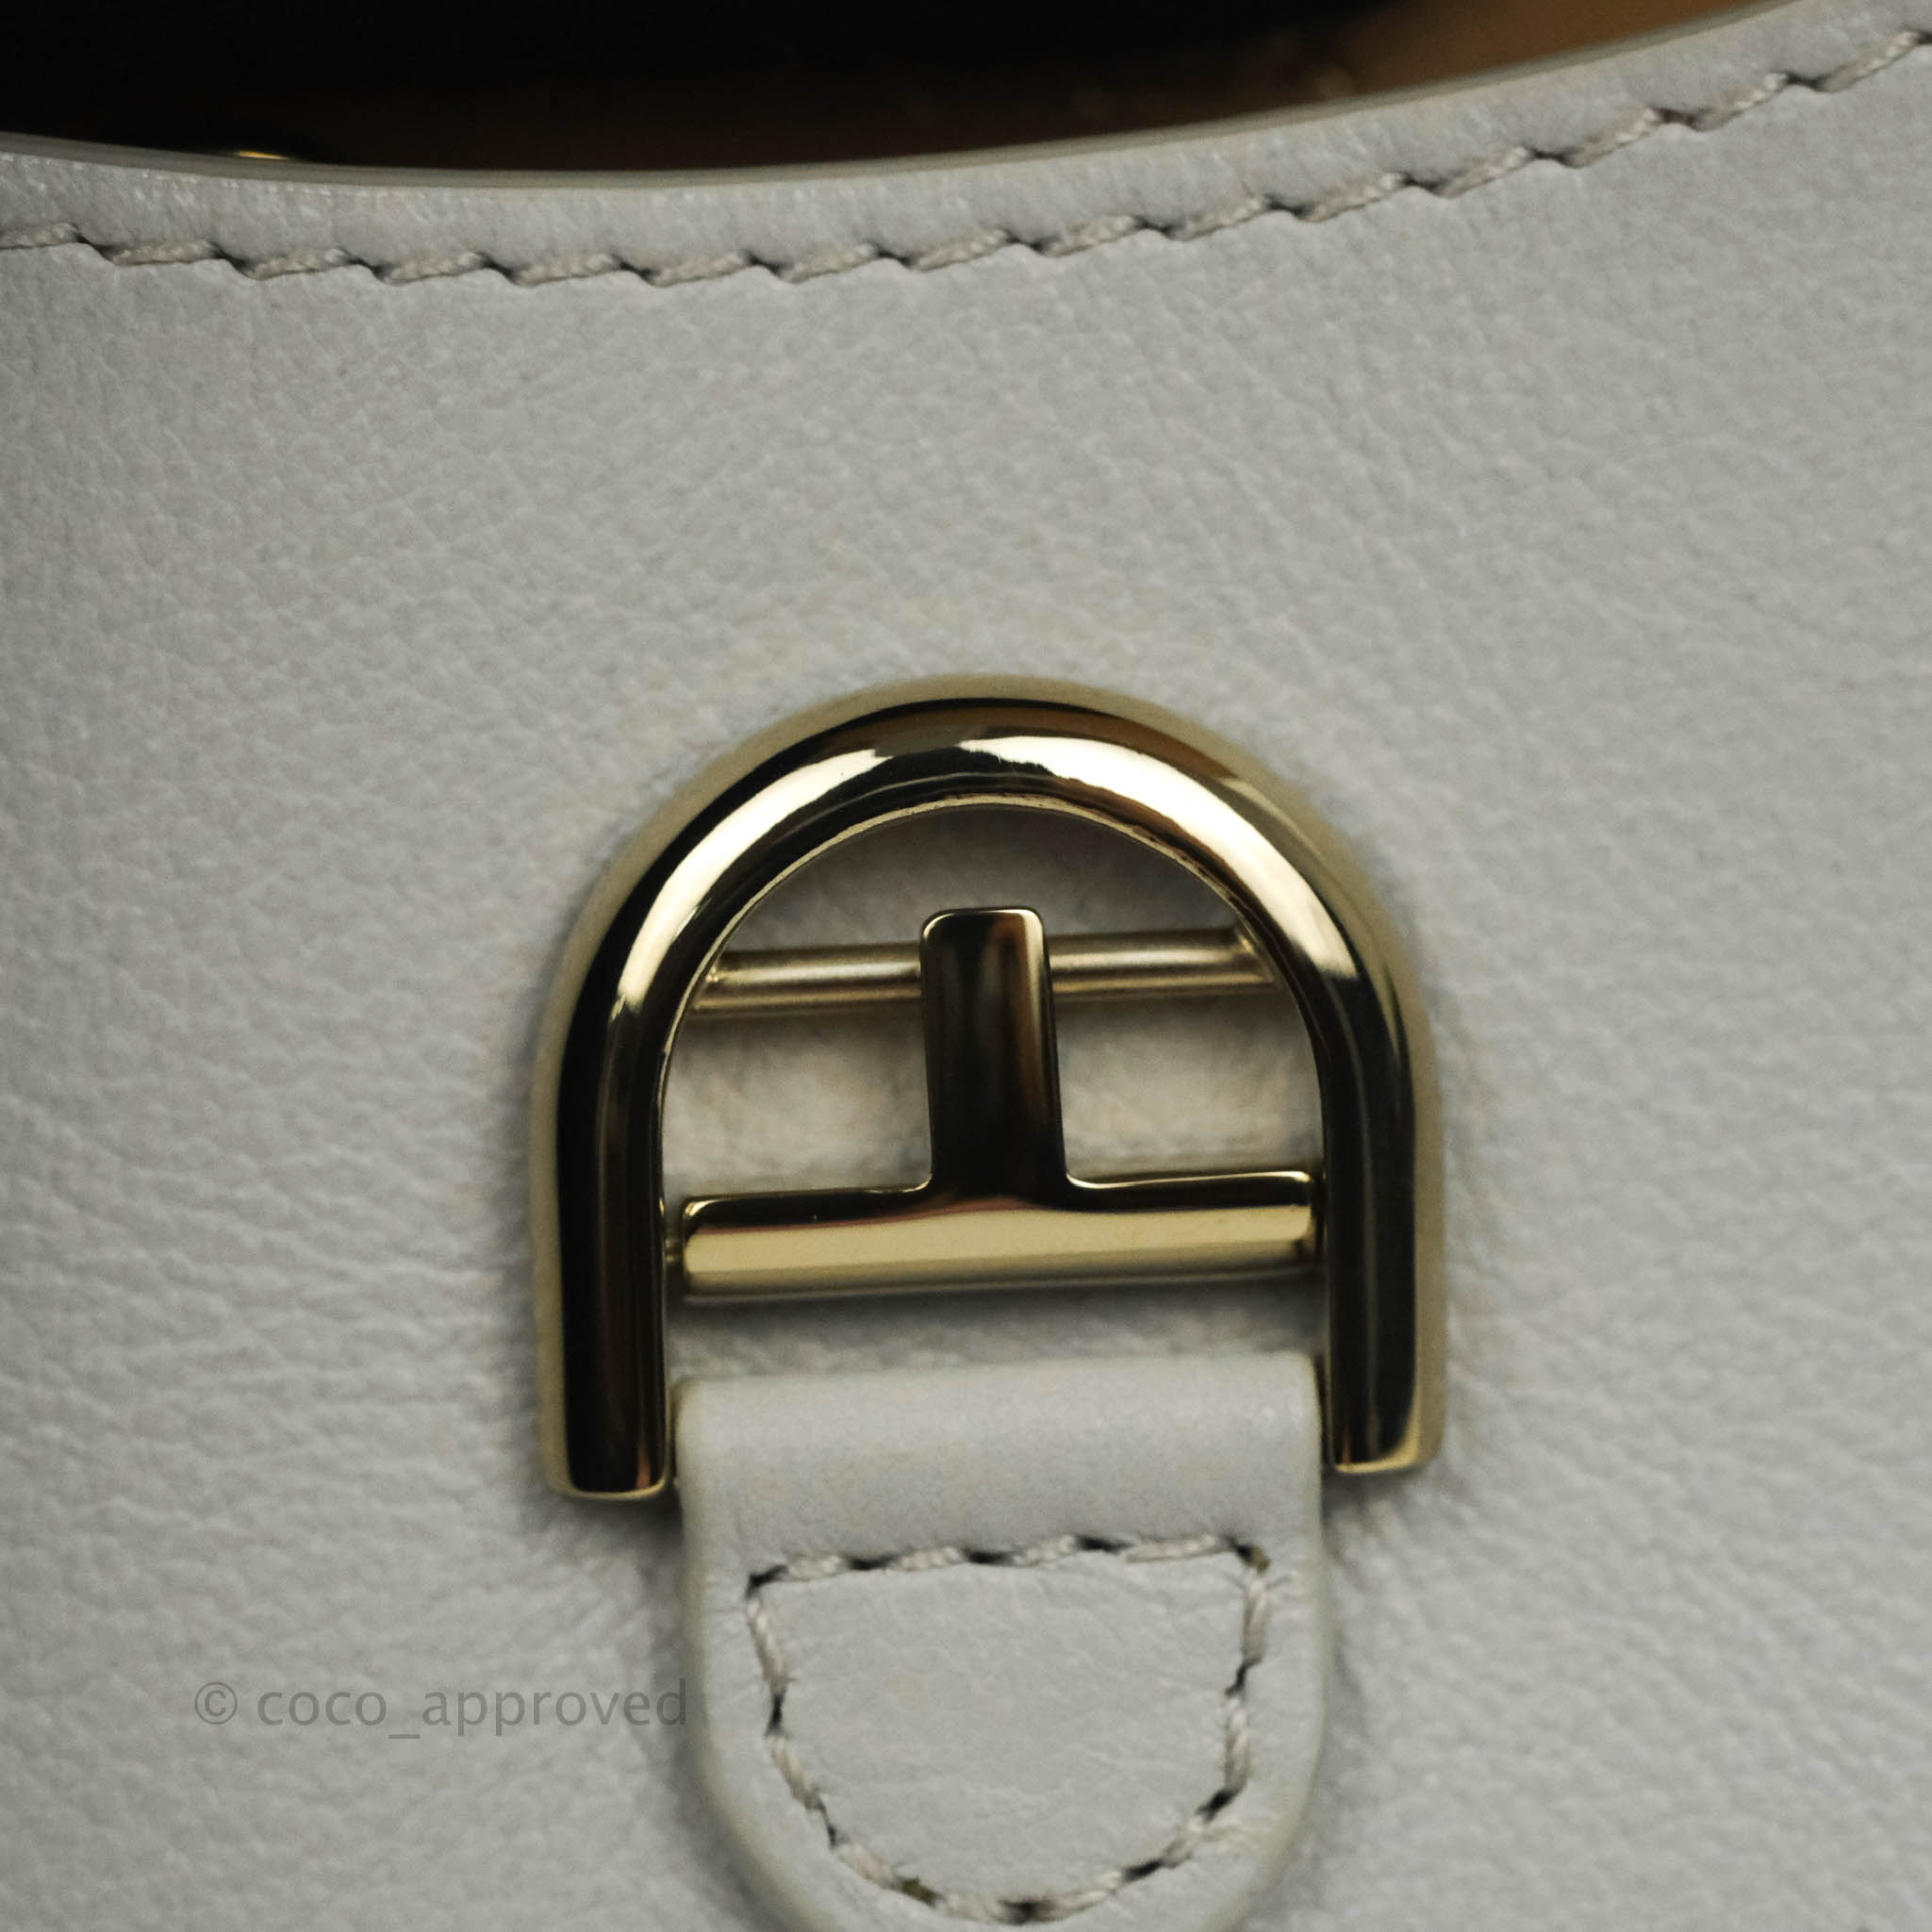 Delvaux Brilliant mini Pink Leather ref.223094 - Joli Closet